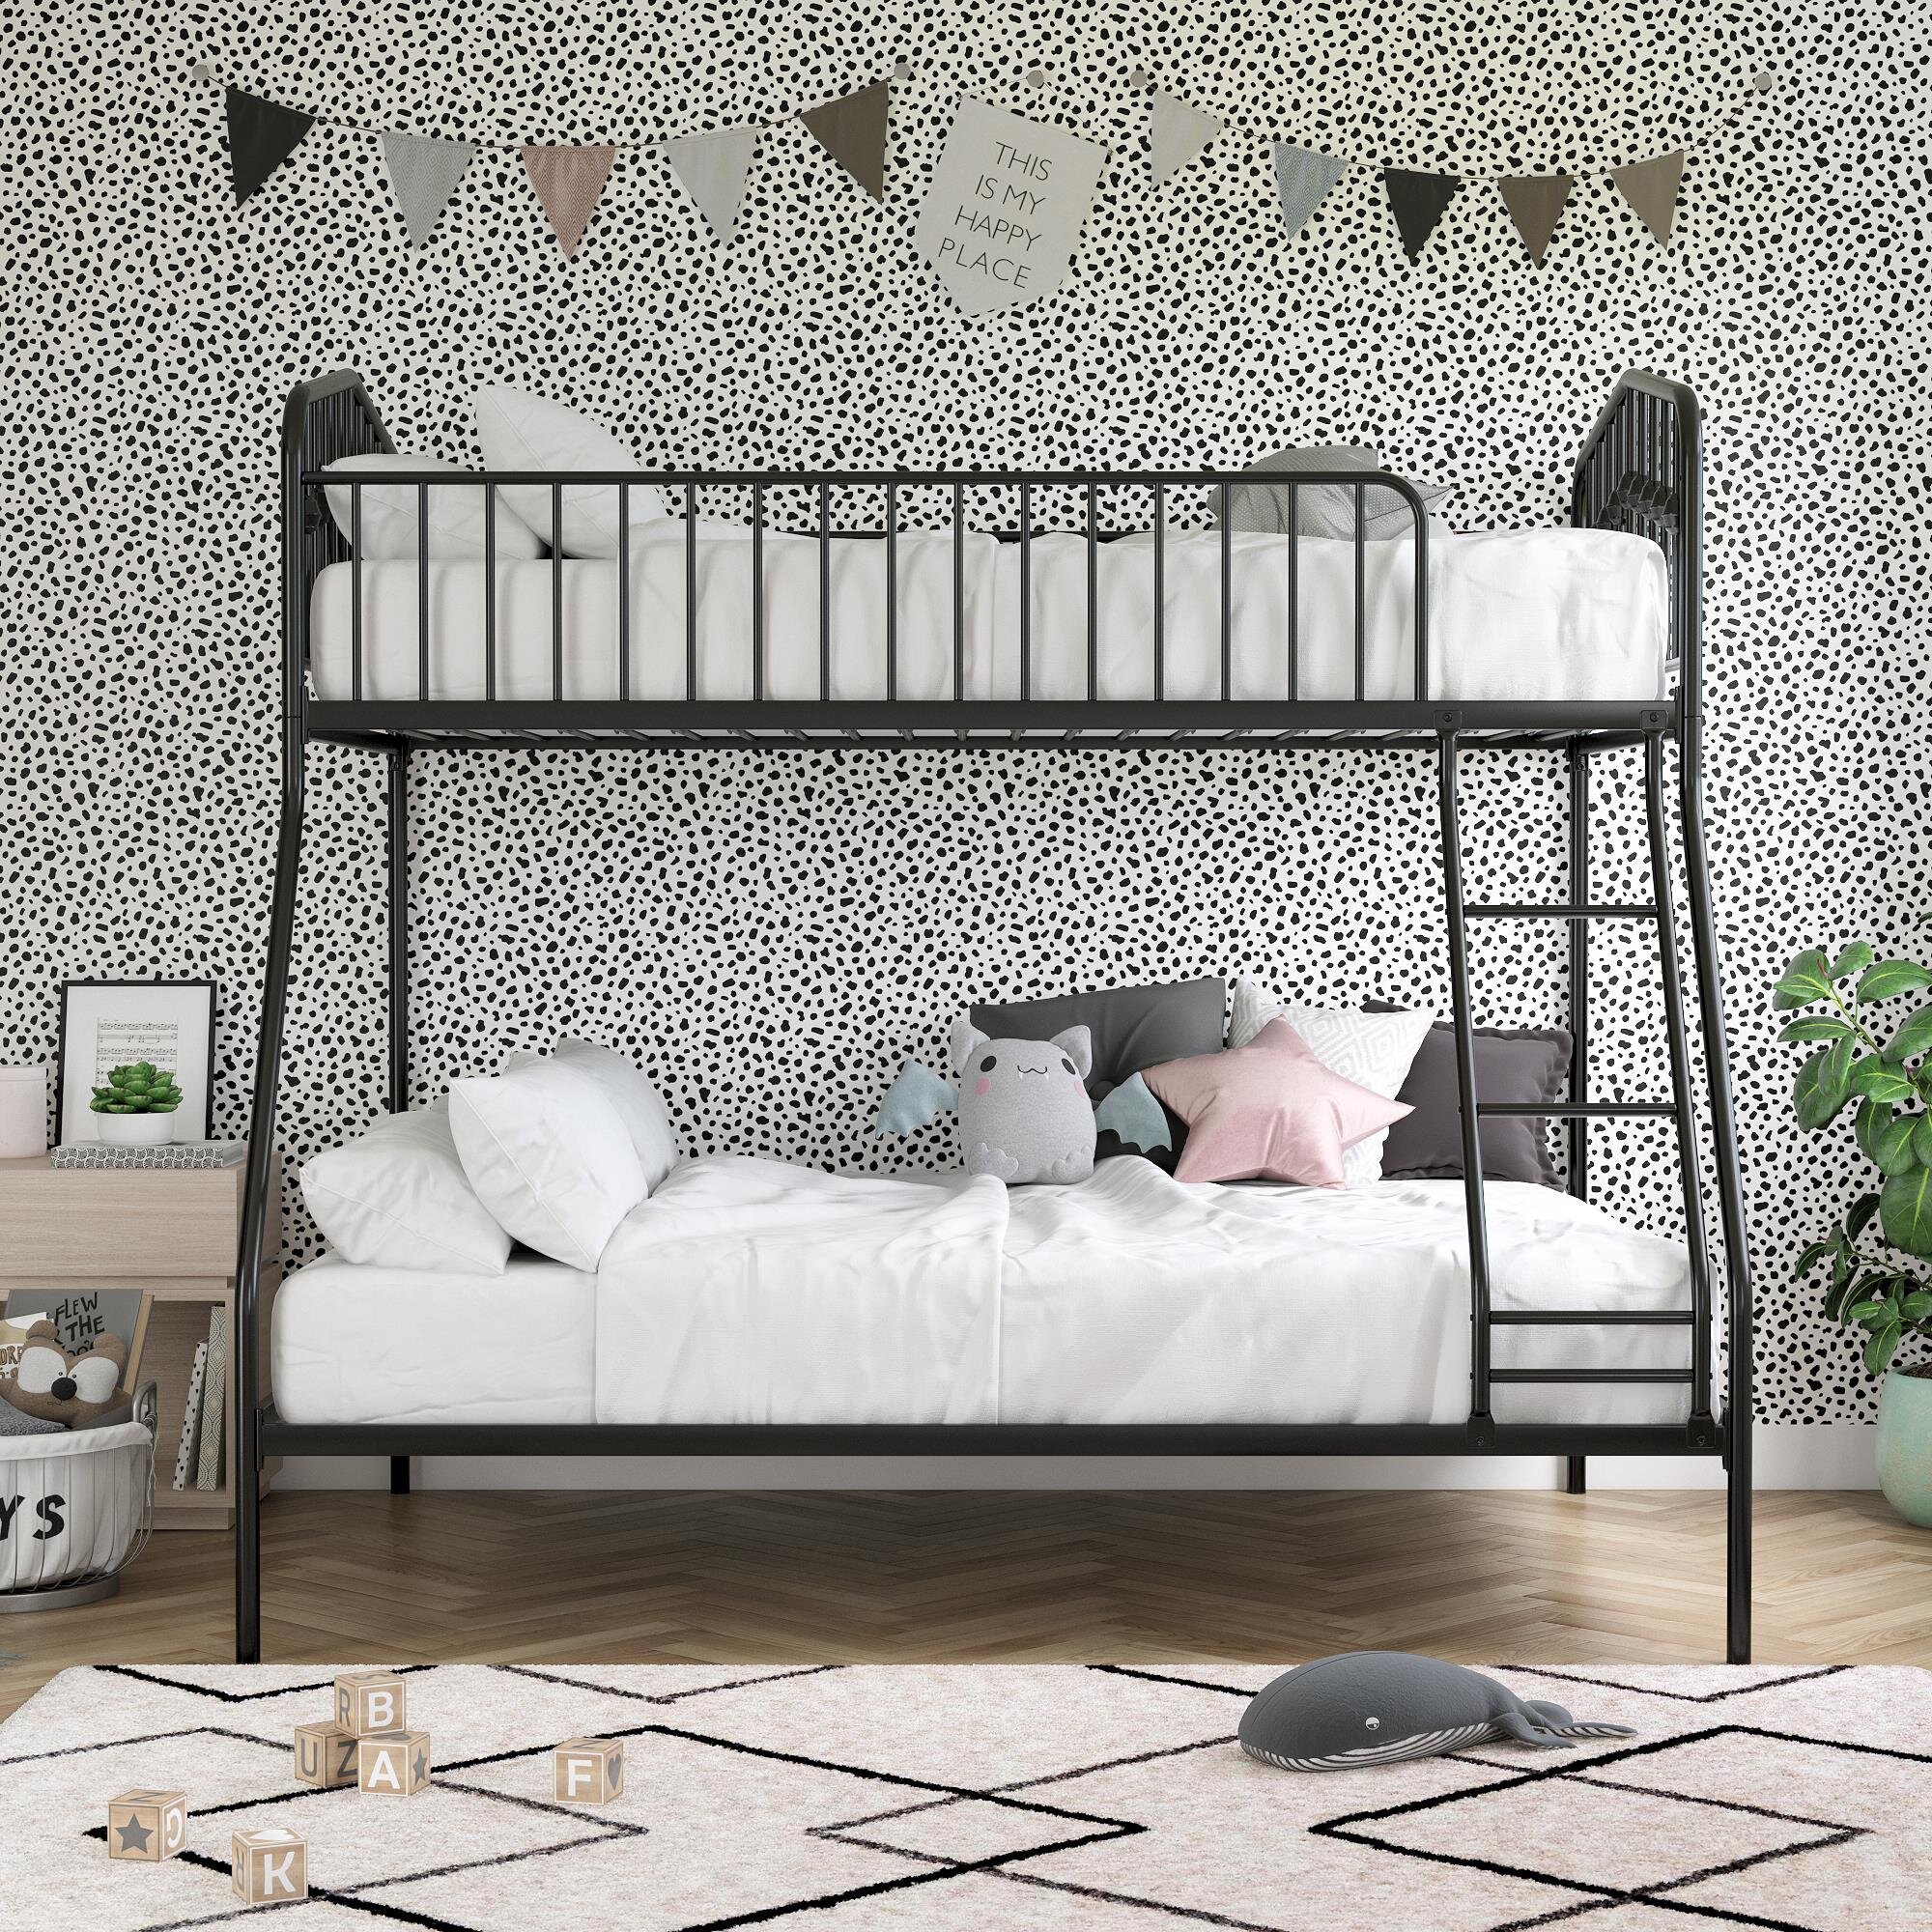 Black Full Over Full Metal Frame Bunk Sleep Bed Kids & Teens Bedroom Furniture 